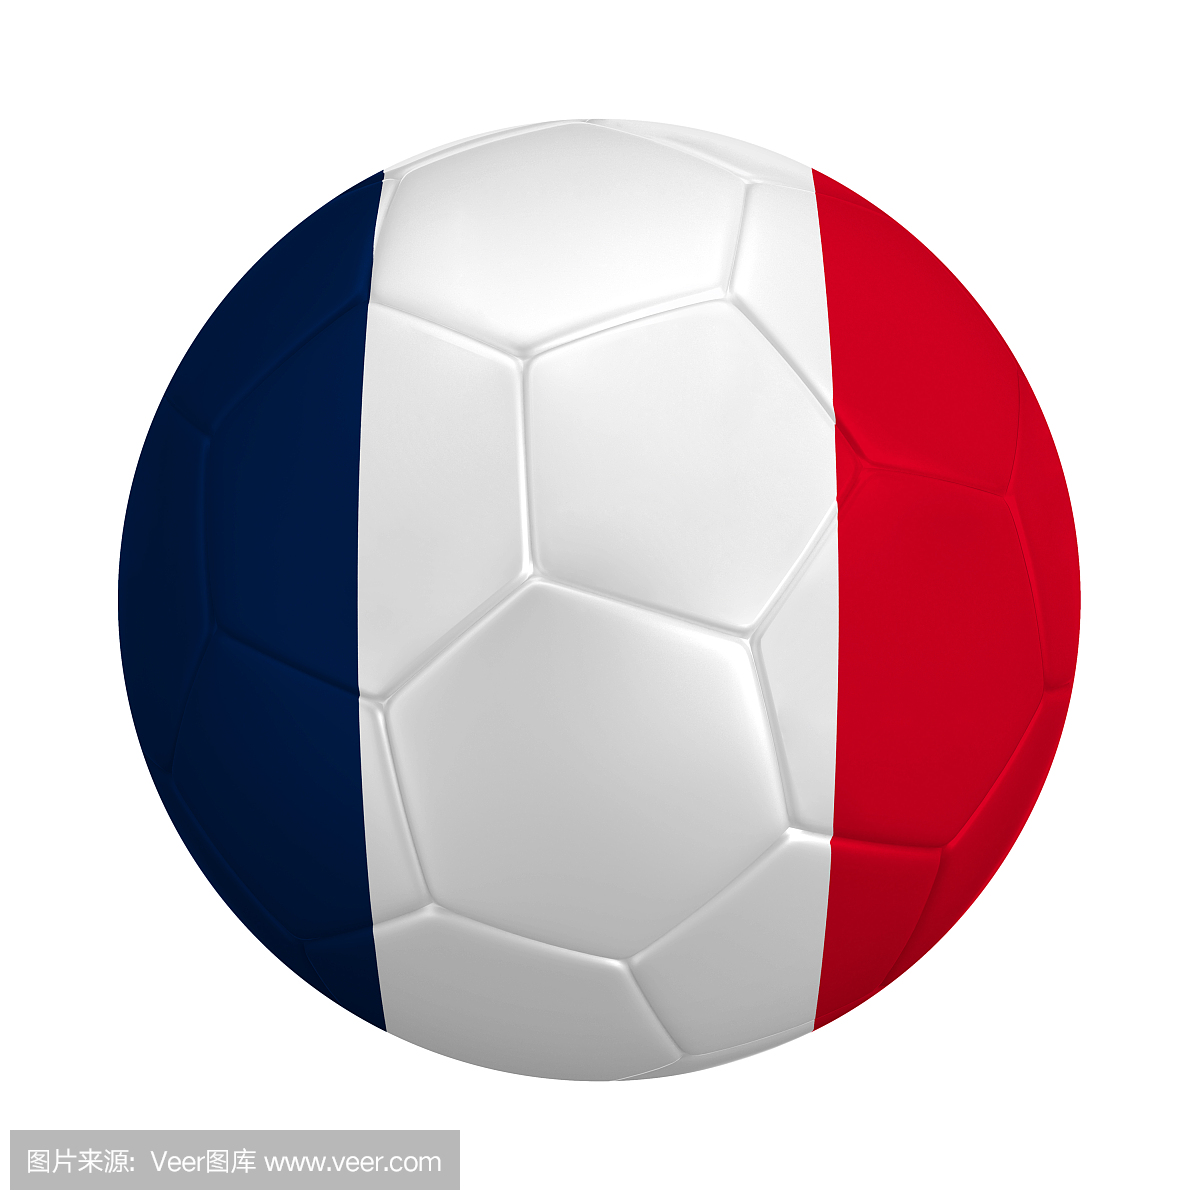 足球与法国国旗的颜色